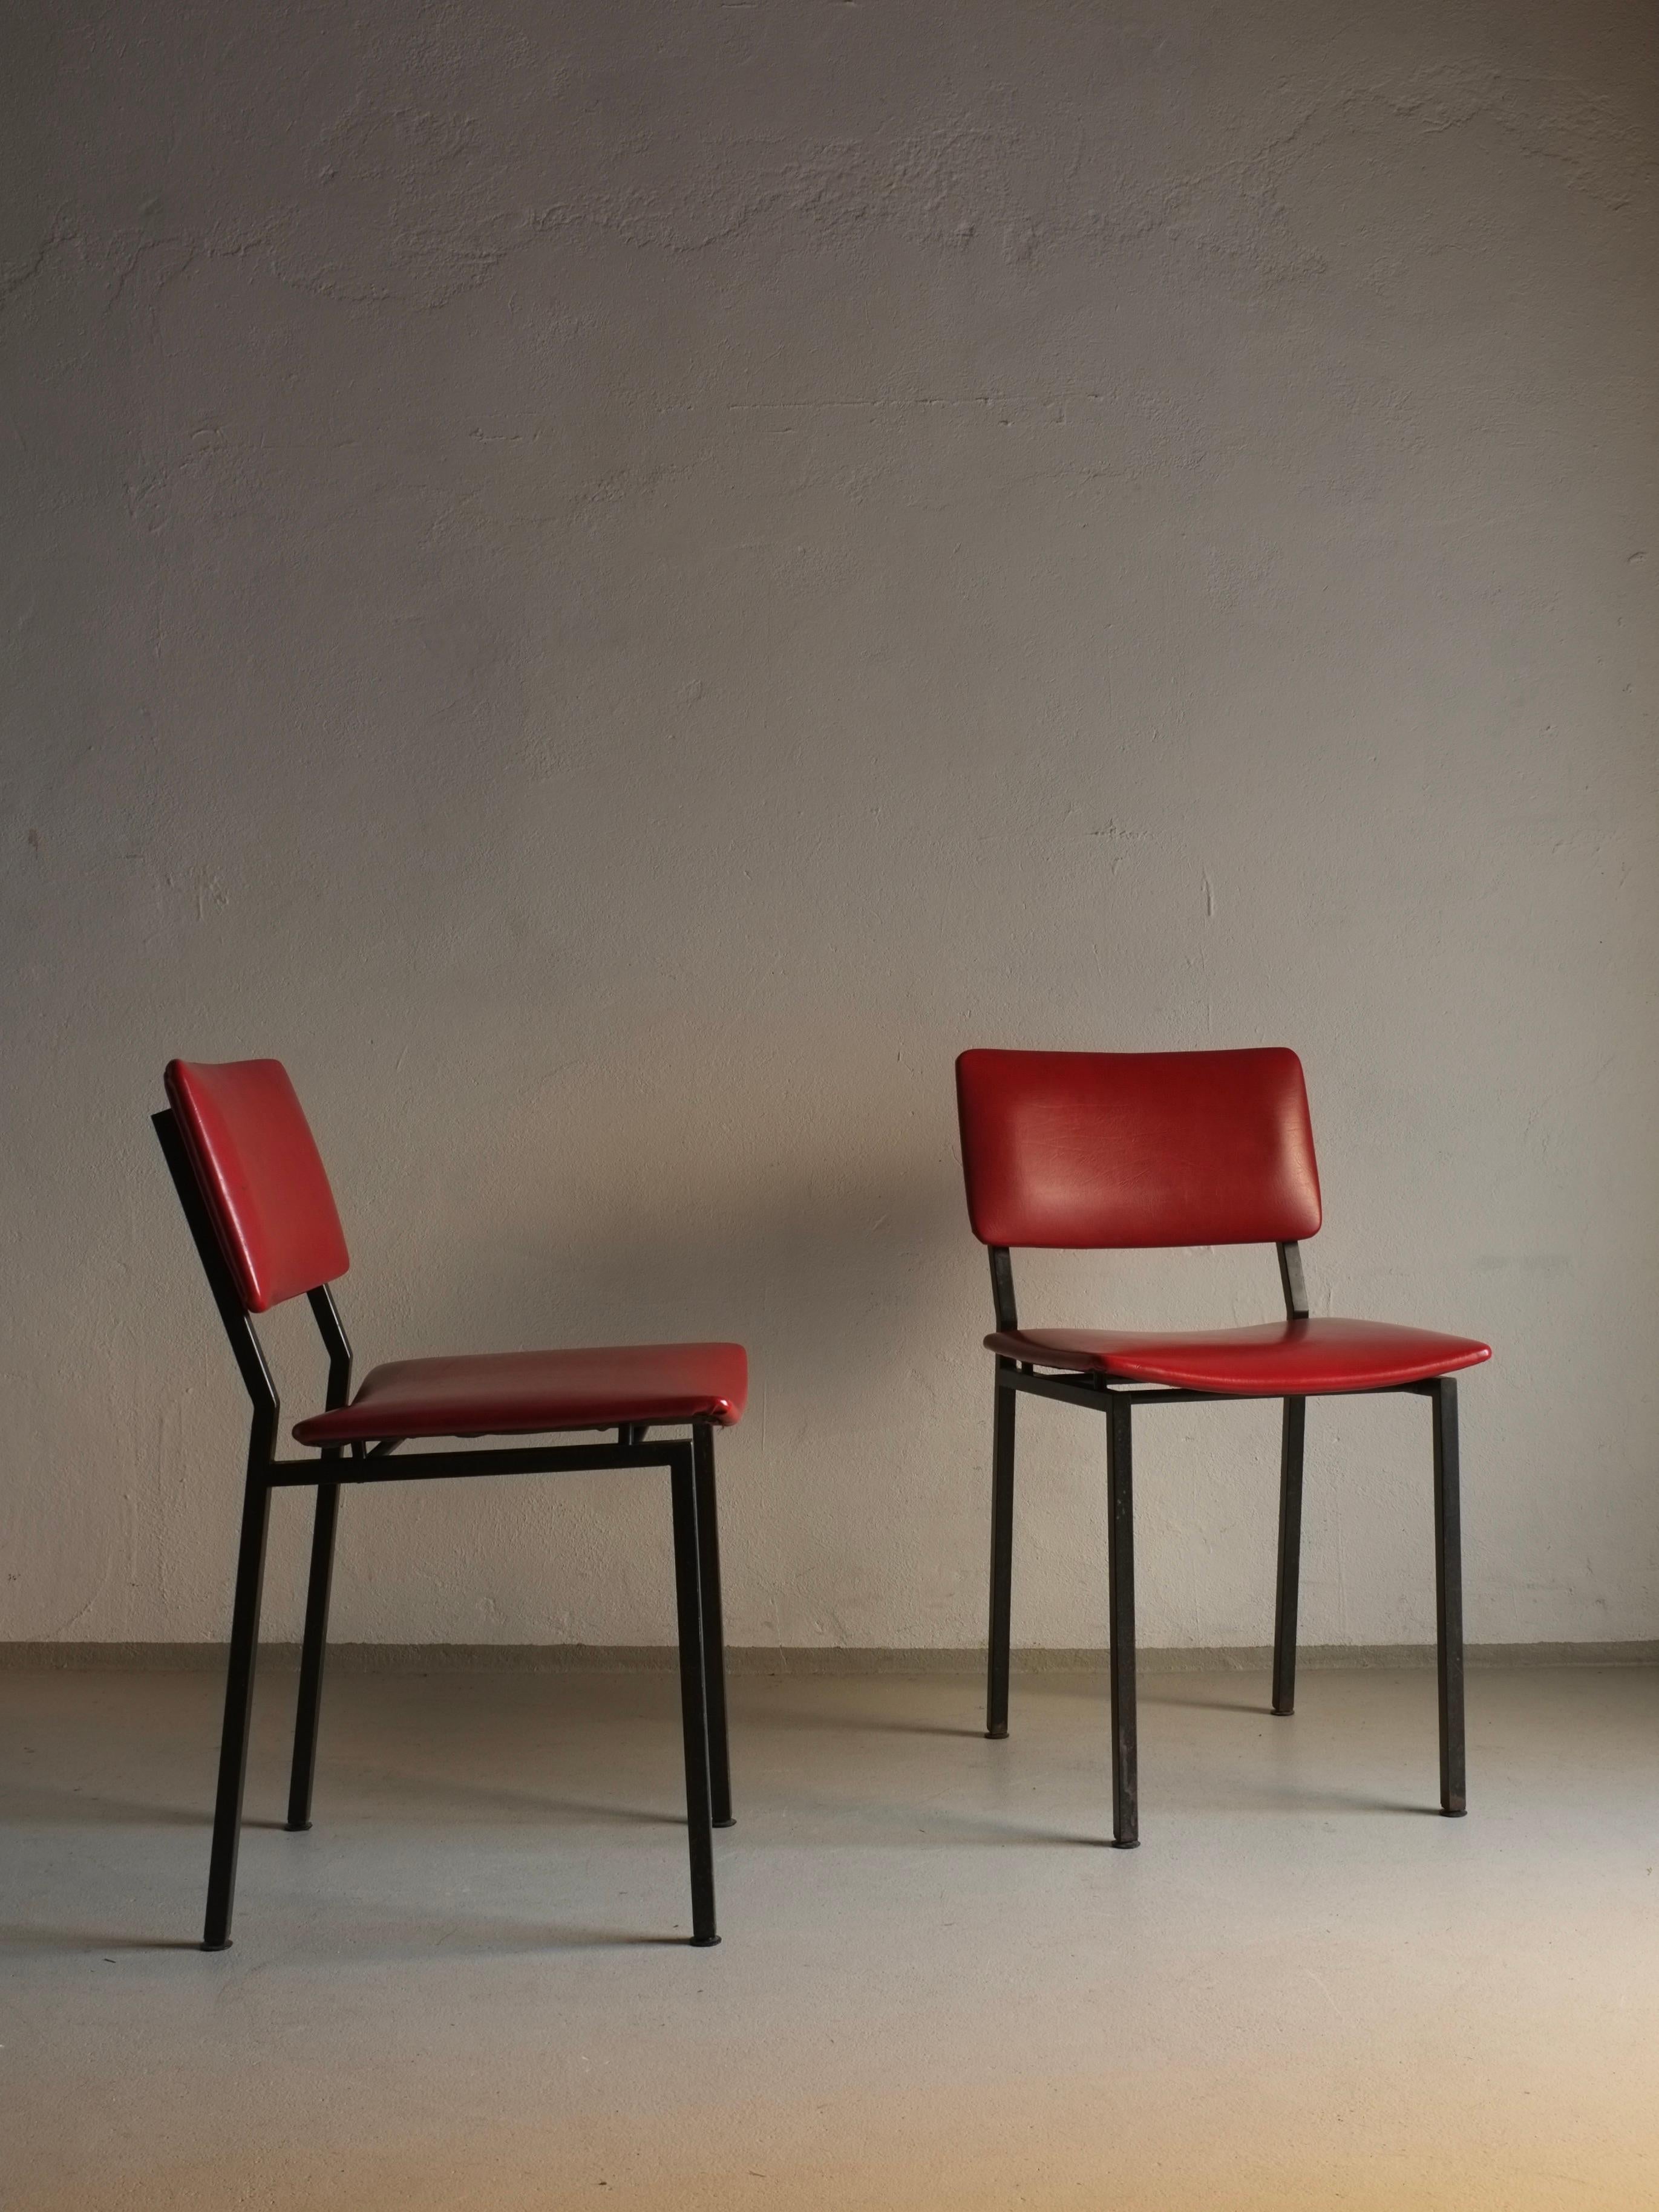 Ensemble de 2 chaises vintage en métal noir avec revêtement en vinyle rouge, conçu par Gerrit Veenendaal pour Kembo Rhenen.

Informations complémentaires :
Pays de fabrication : Pays-Bas
Période : 1960s
Dimensions : L 43 L x 53 P x 77 H cm
Assise :